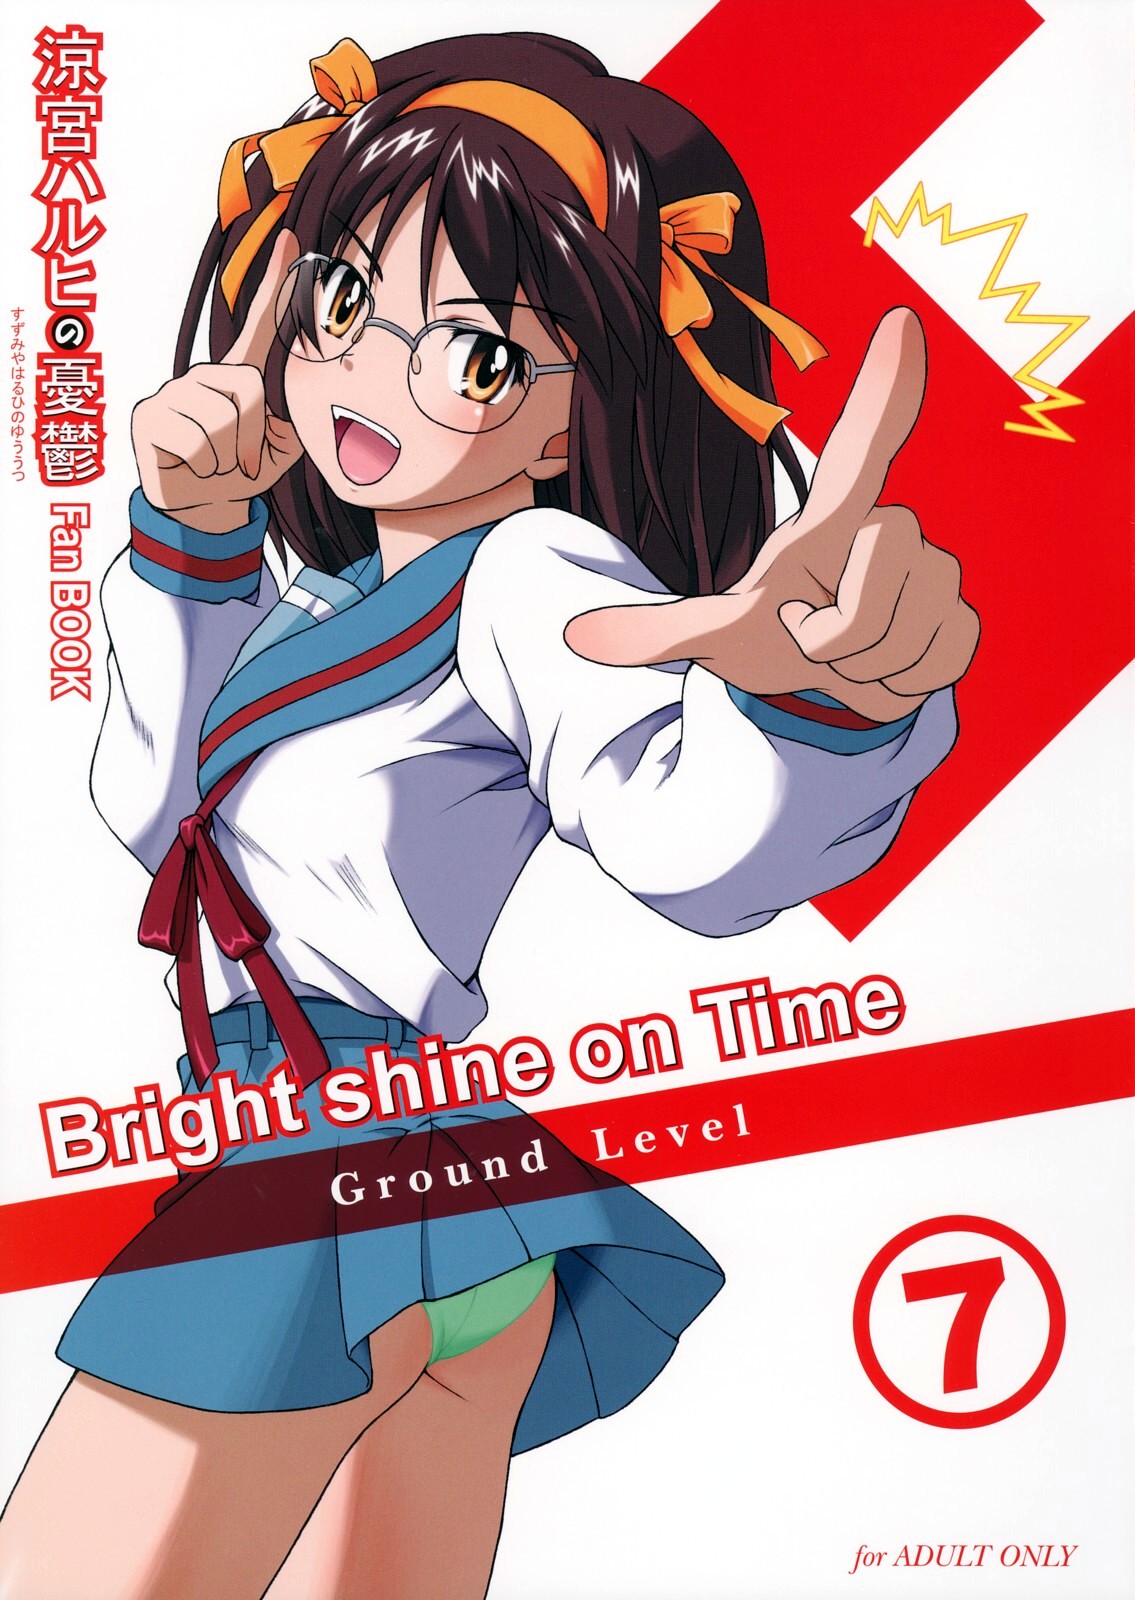 (C71) [Ground Level (Asano Hiro)] Bright shine on Time 7 (The Melancholy of Haruhi Suzumiya) page 1 full